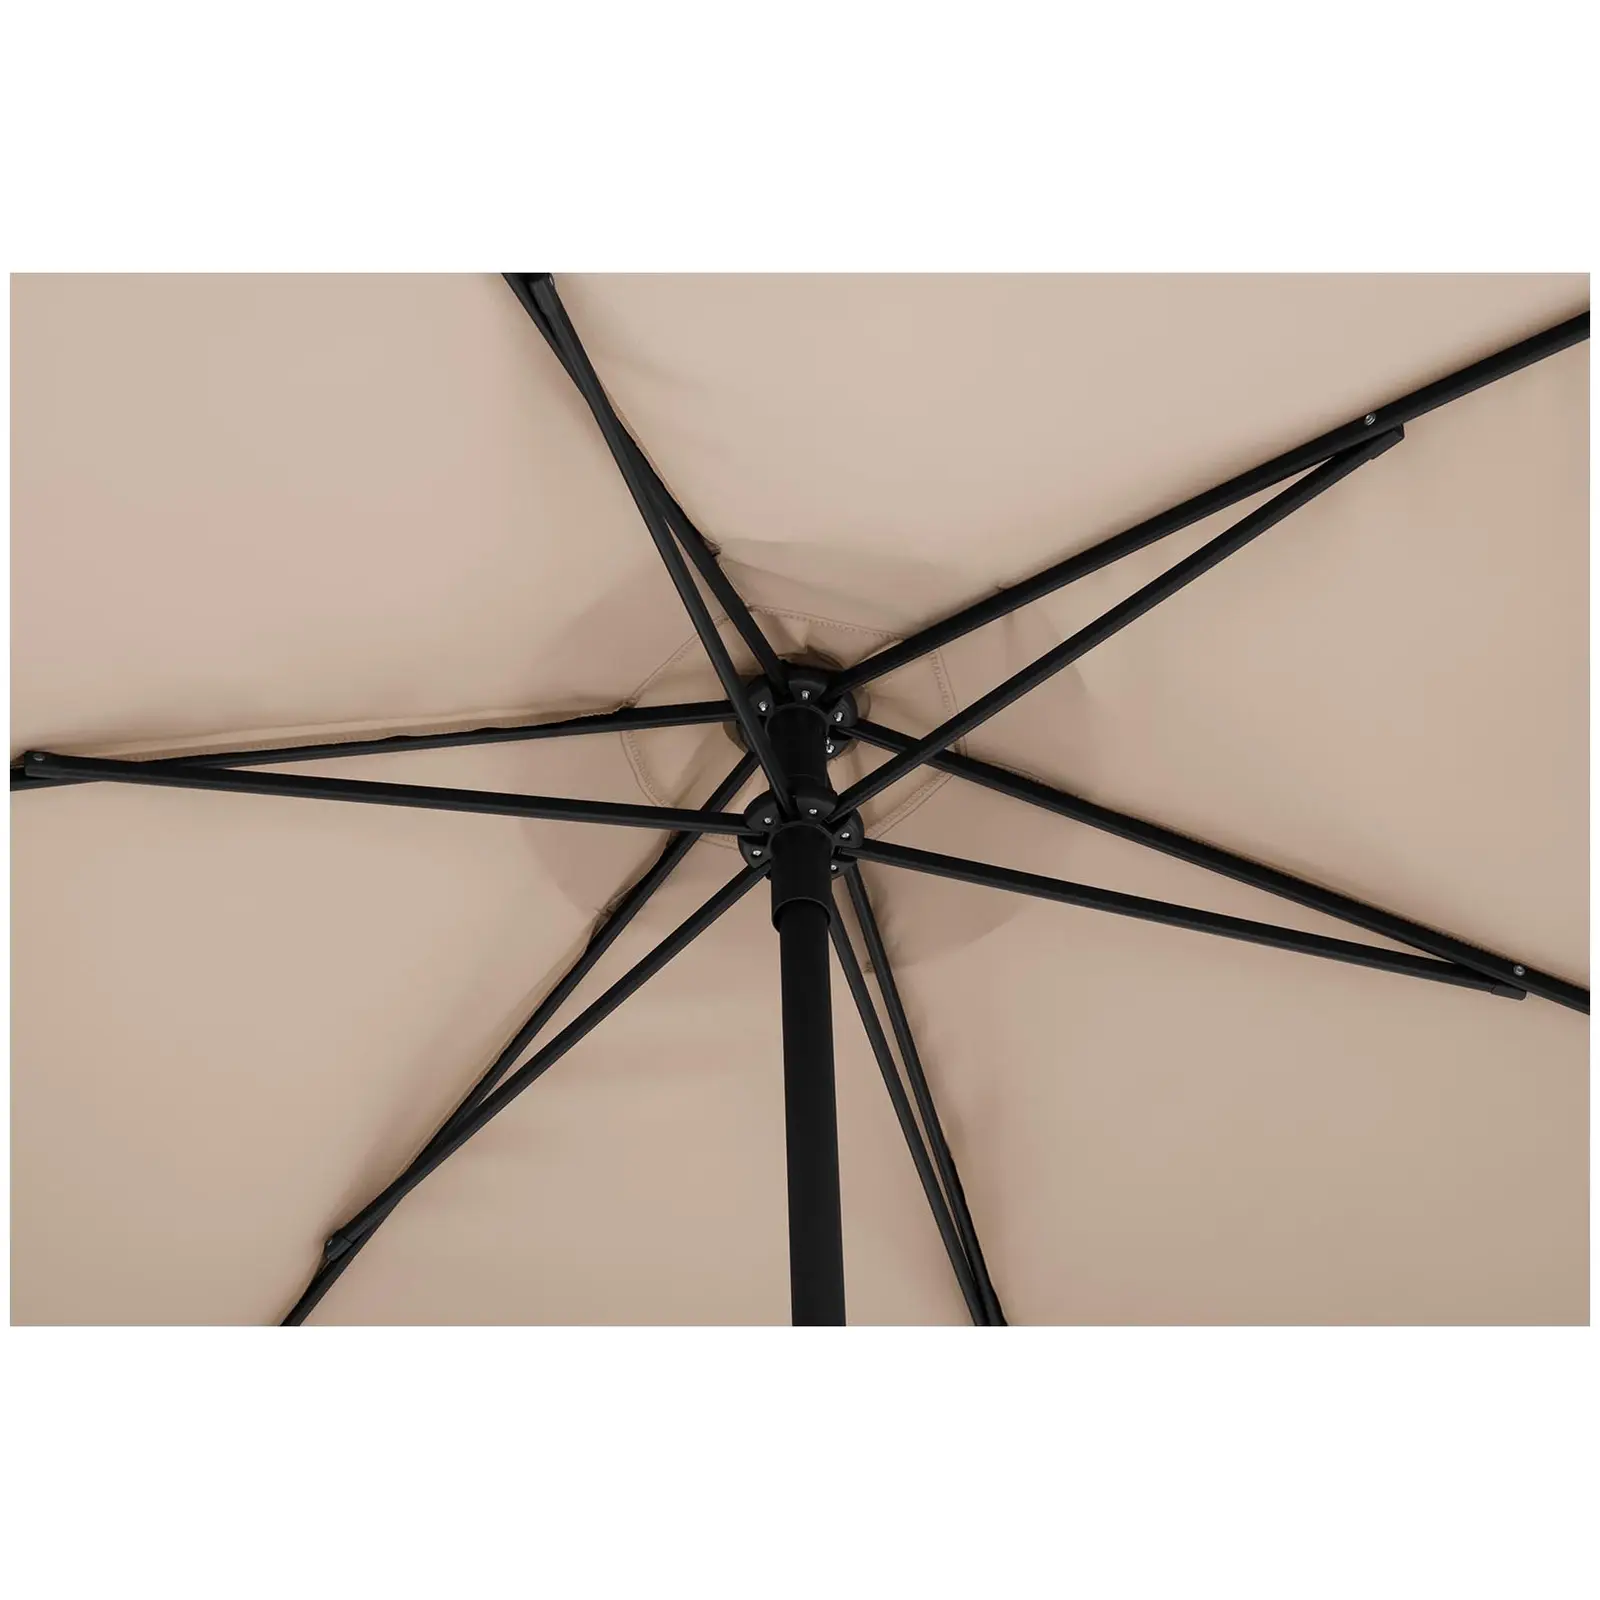 Garden umbrella large - cream - hexagonal - Ø 270 cm